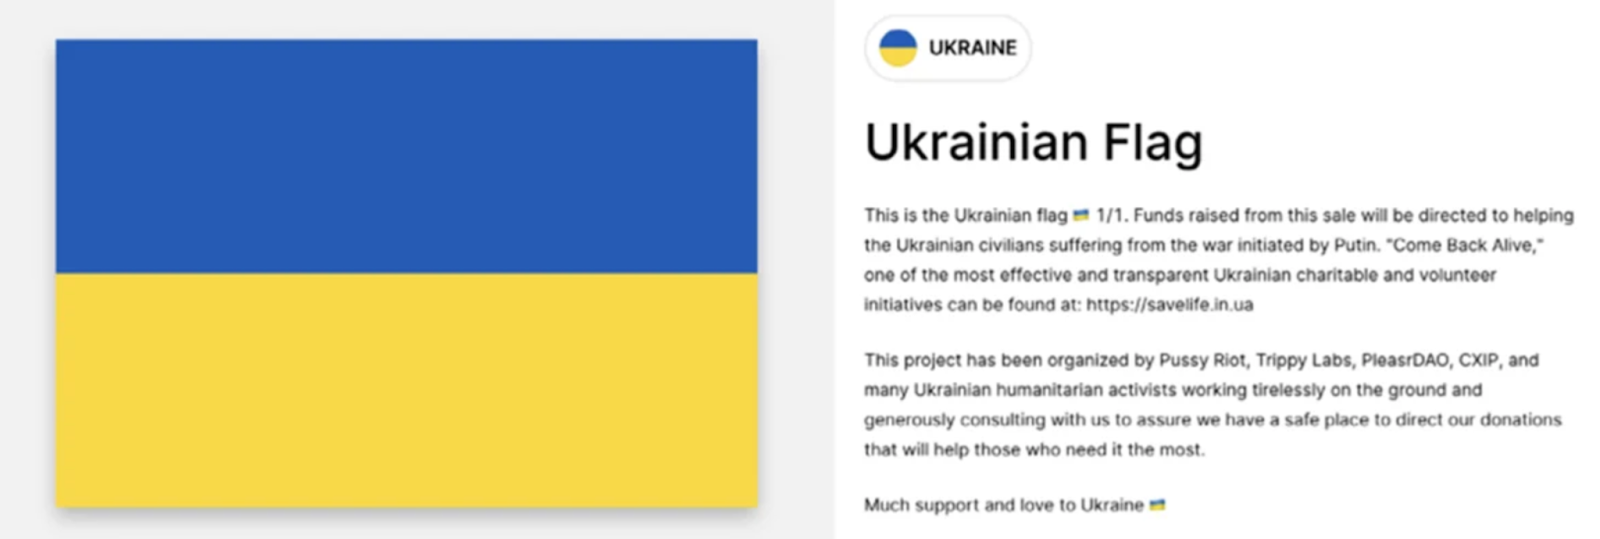 Les dons de crypto-monnaie pour l'Ukraine ont augmenté rapidement, mais l'aide était toujours en monnaie fiduciaire - La Crypto Monnaie